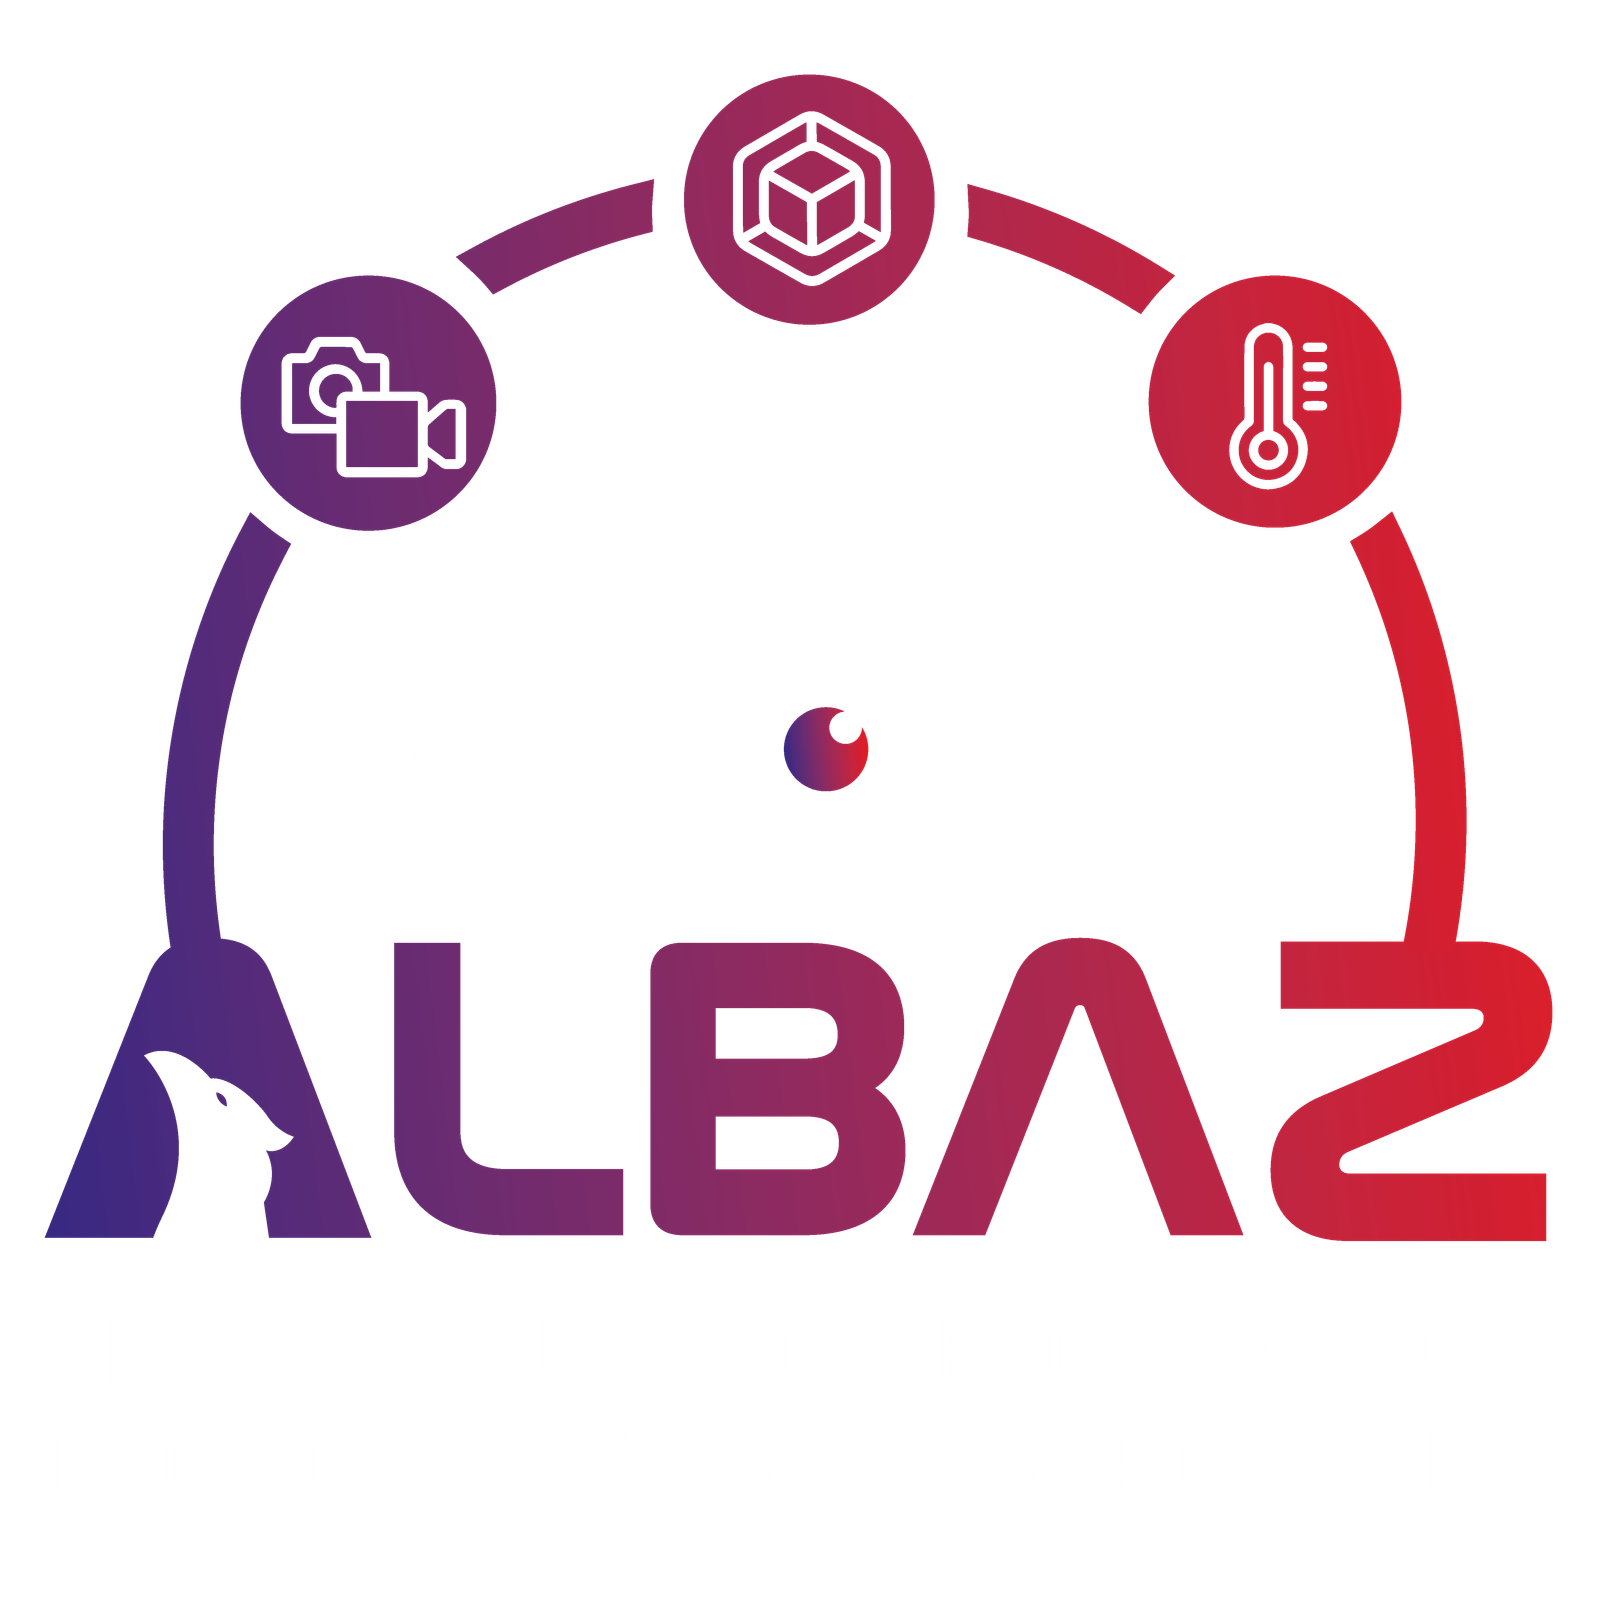 Albaz Drone - PRISE DE VUE DRONE PHOTO ET VIDEO | PHOTOGRAMMETRIE | THERMOGRAPHIE